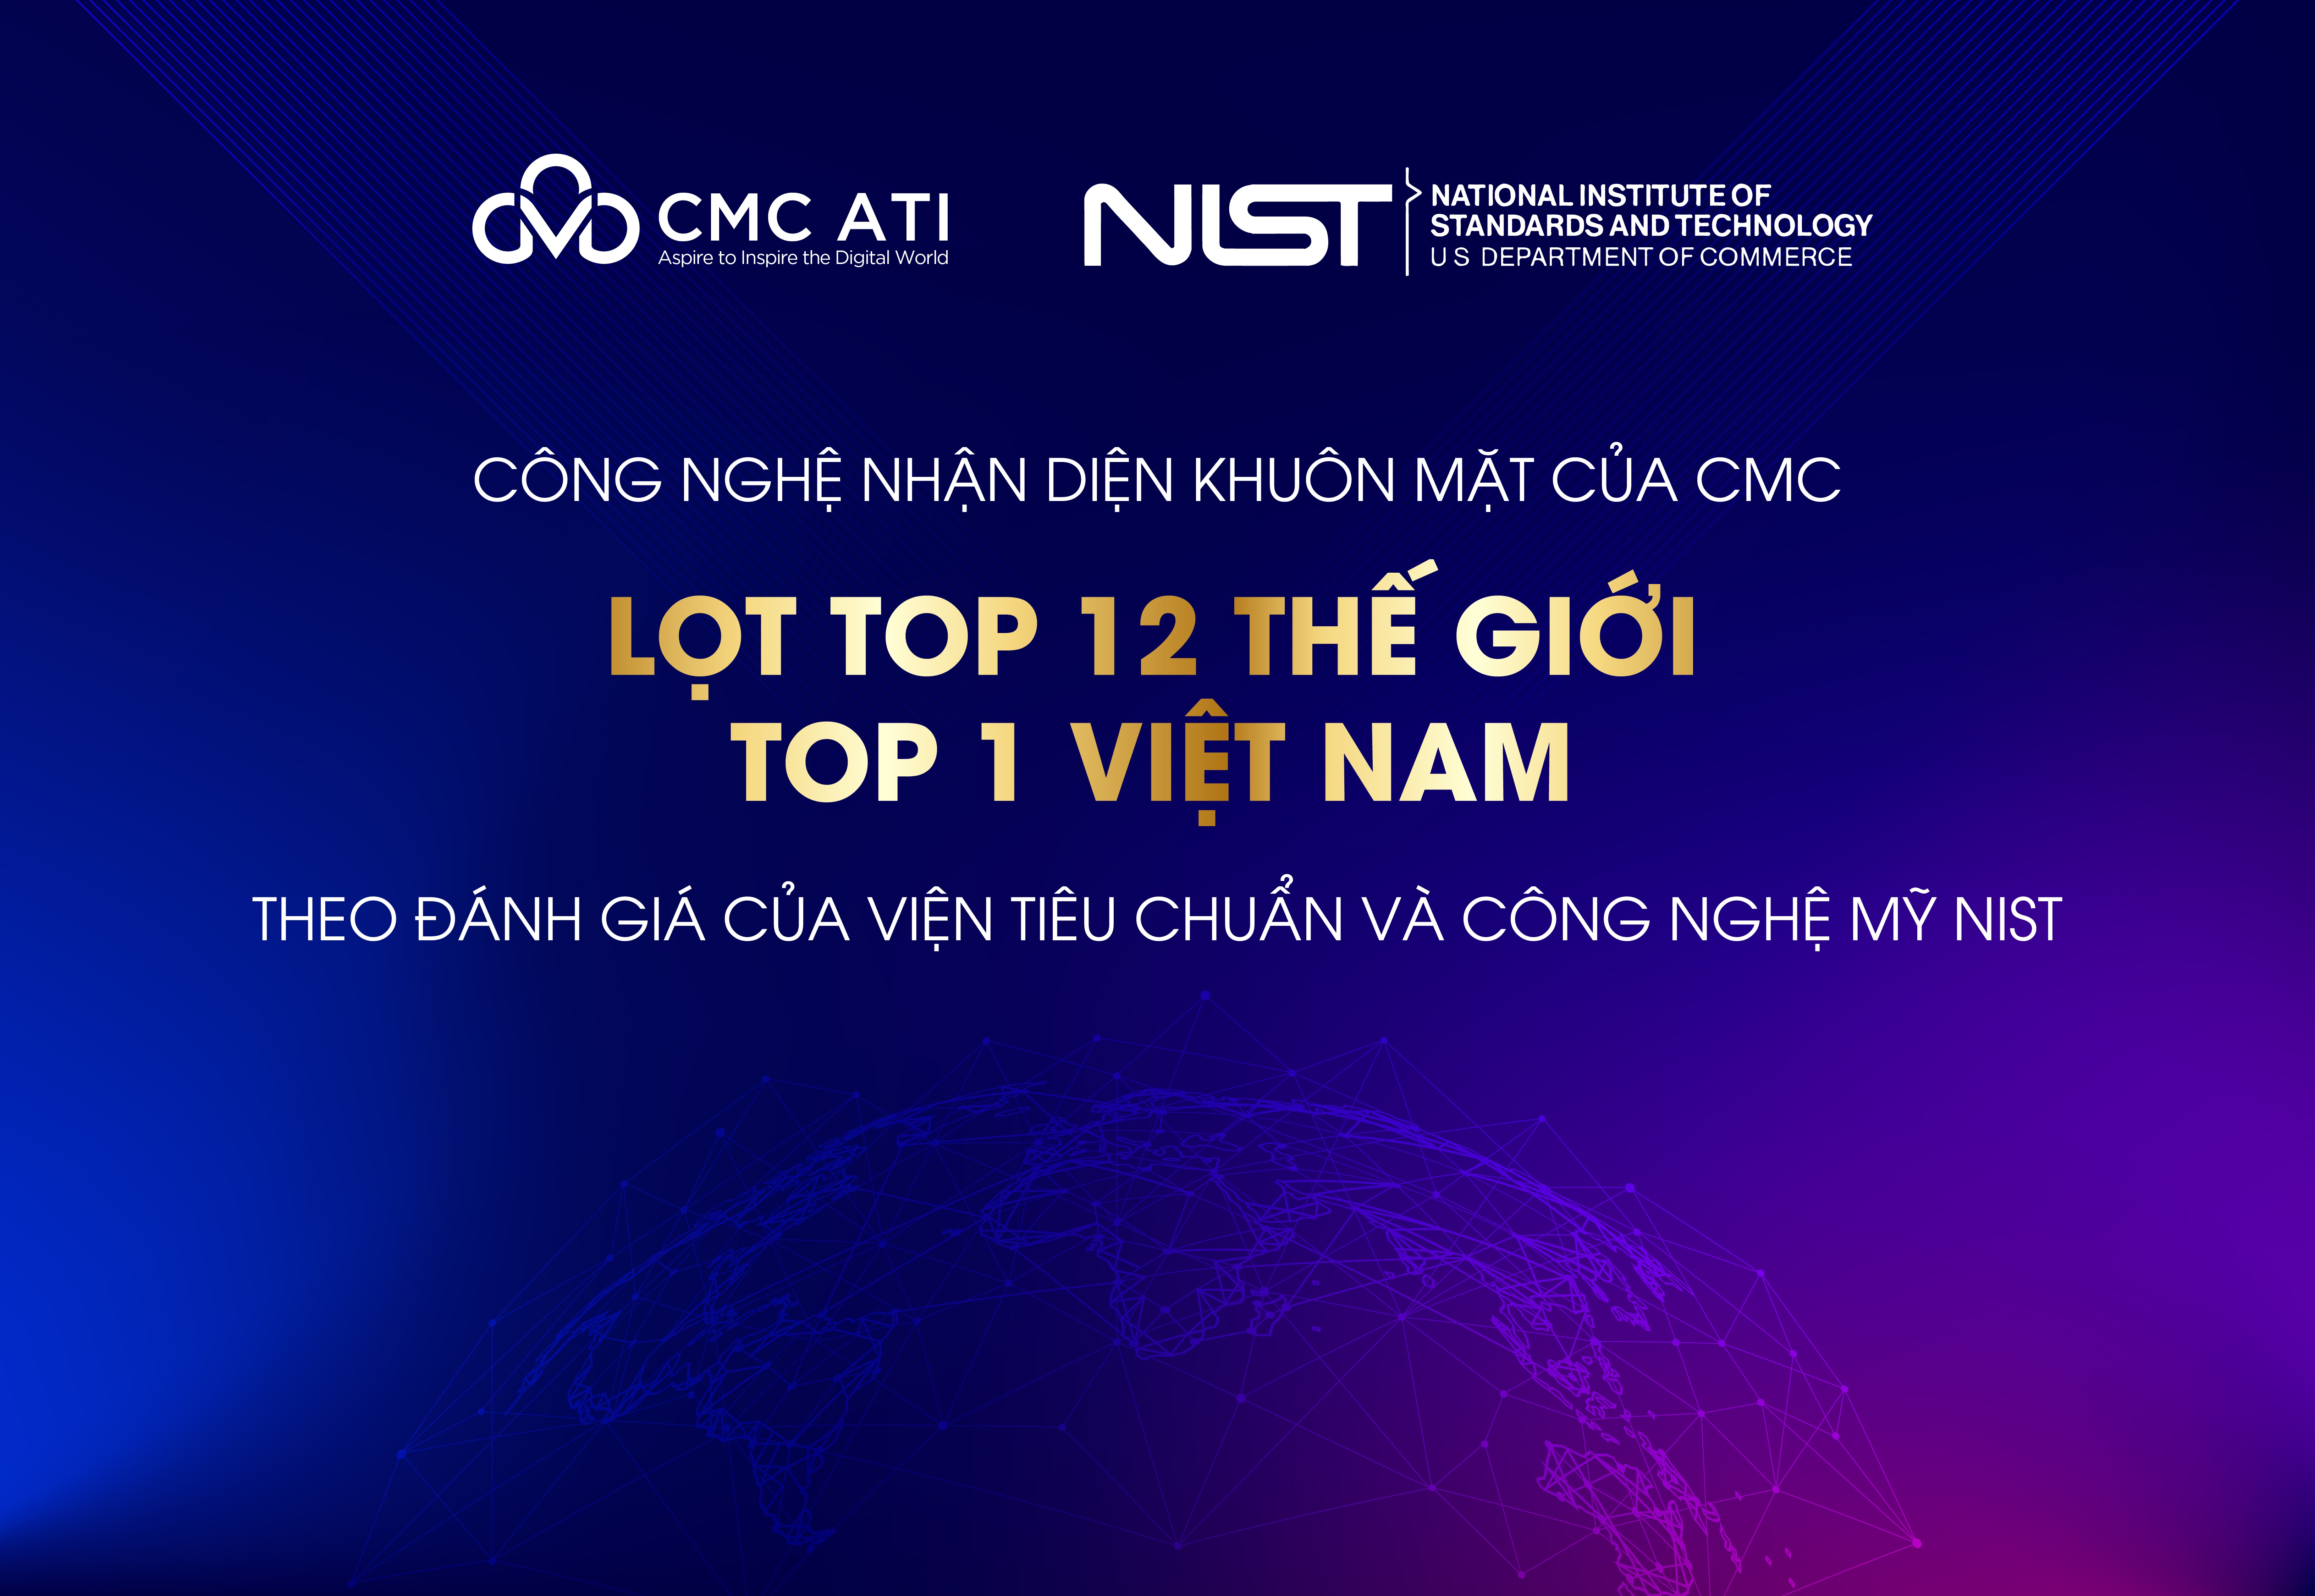 Công nghệ nhận diện khuôn mặt của CMC lọt top 12 thế giới và top 1 Việt Nam theo đánh giá của NIST. 